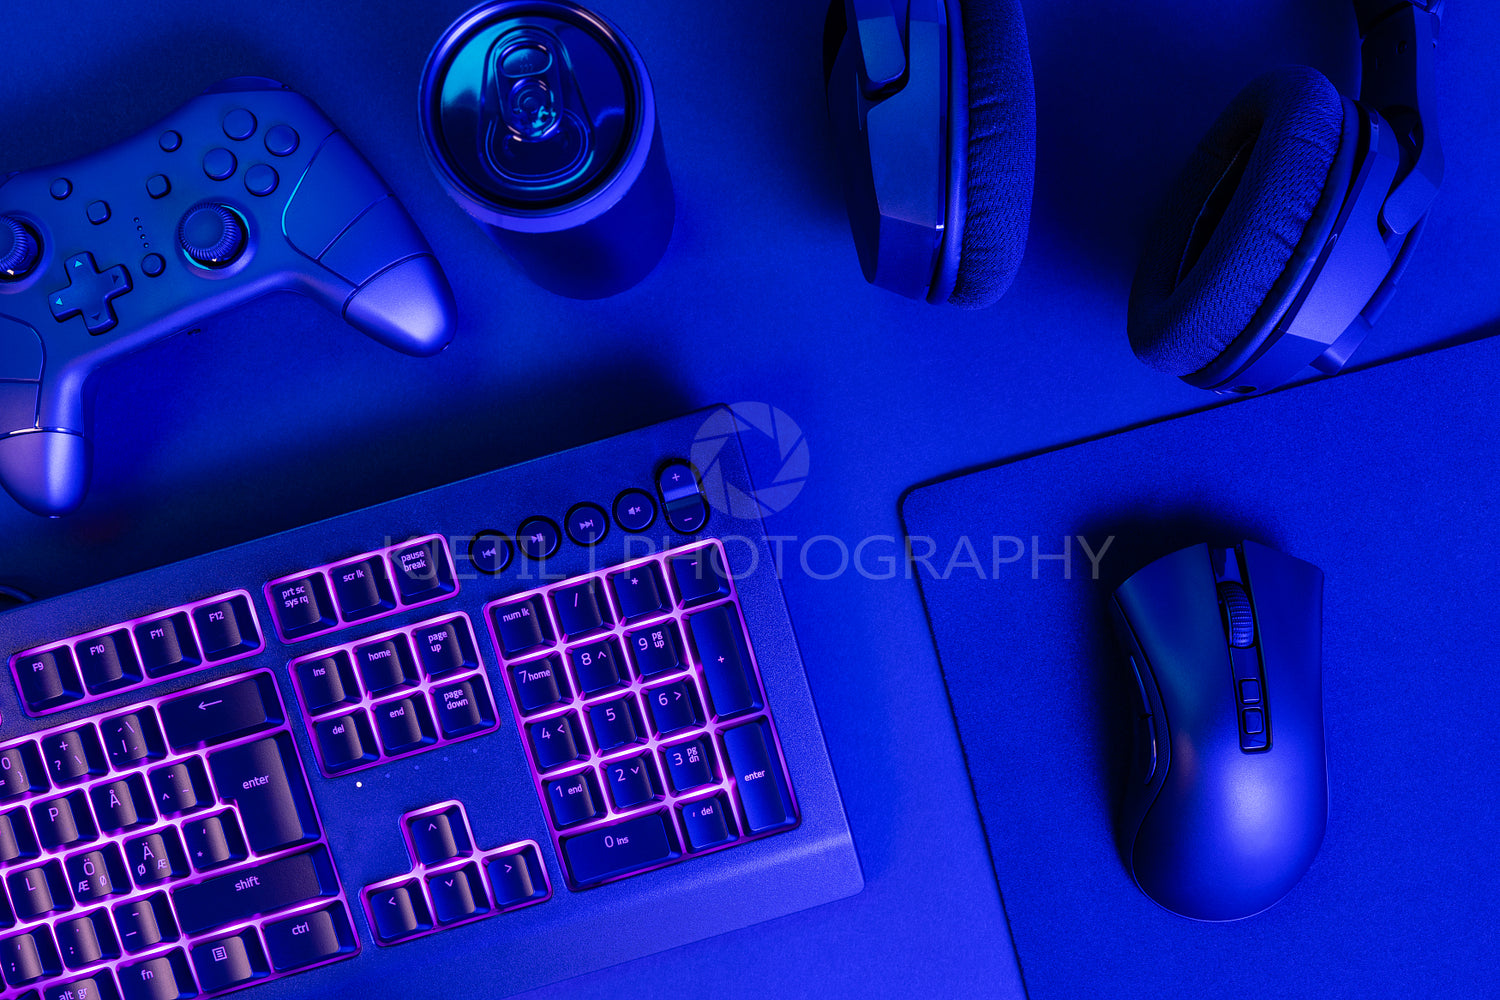 Purple lit keyboard by various wireless gadgets